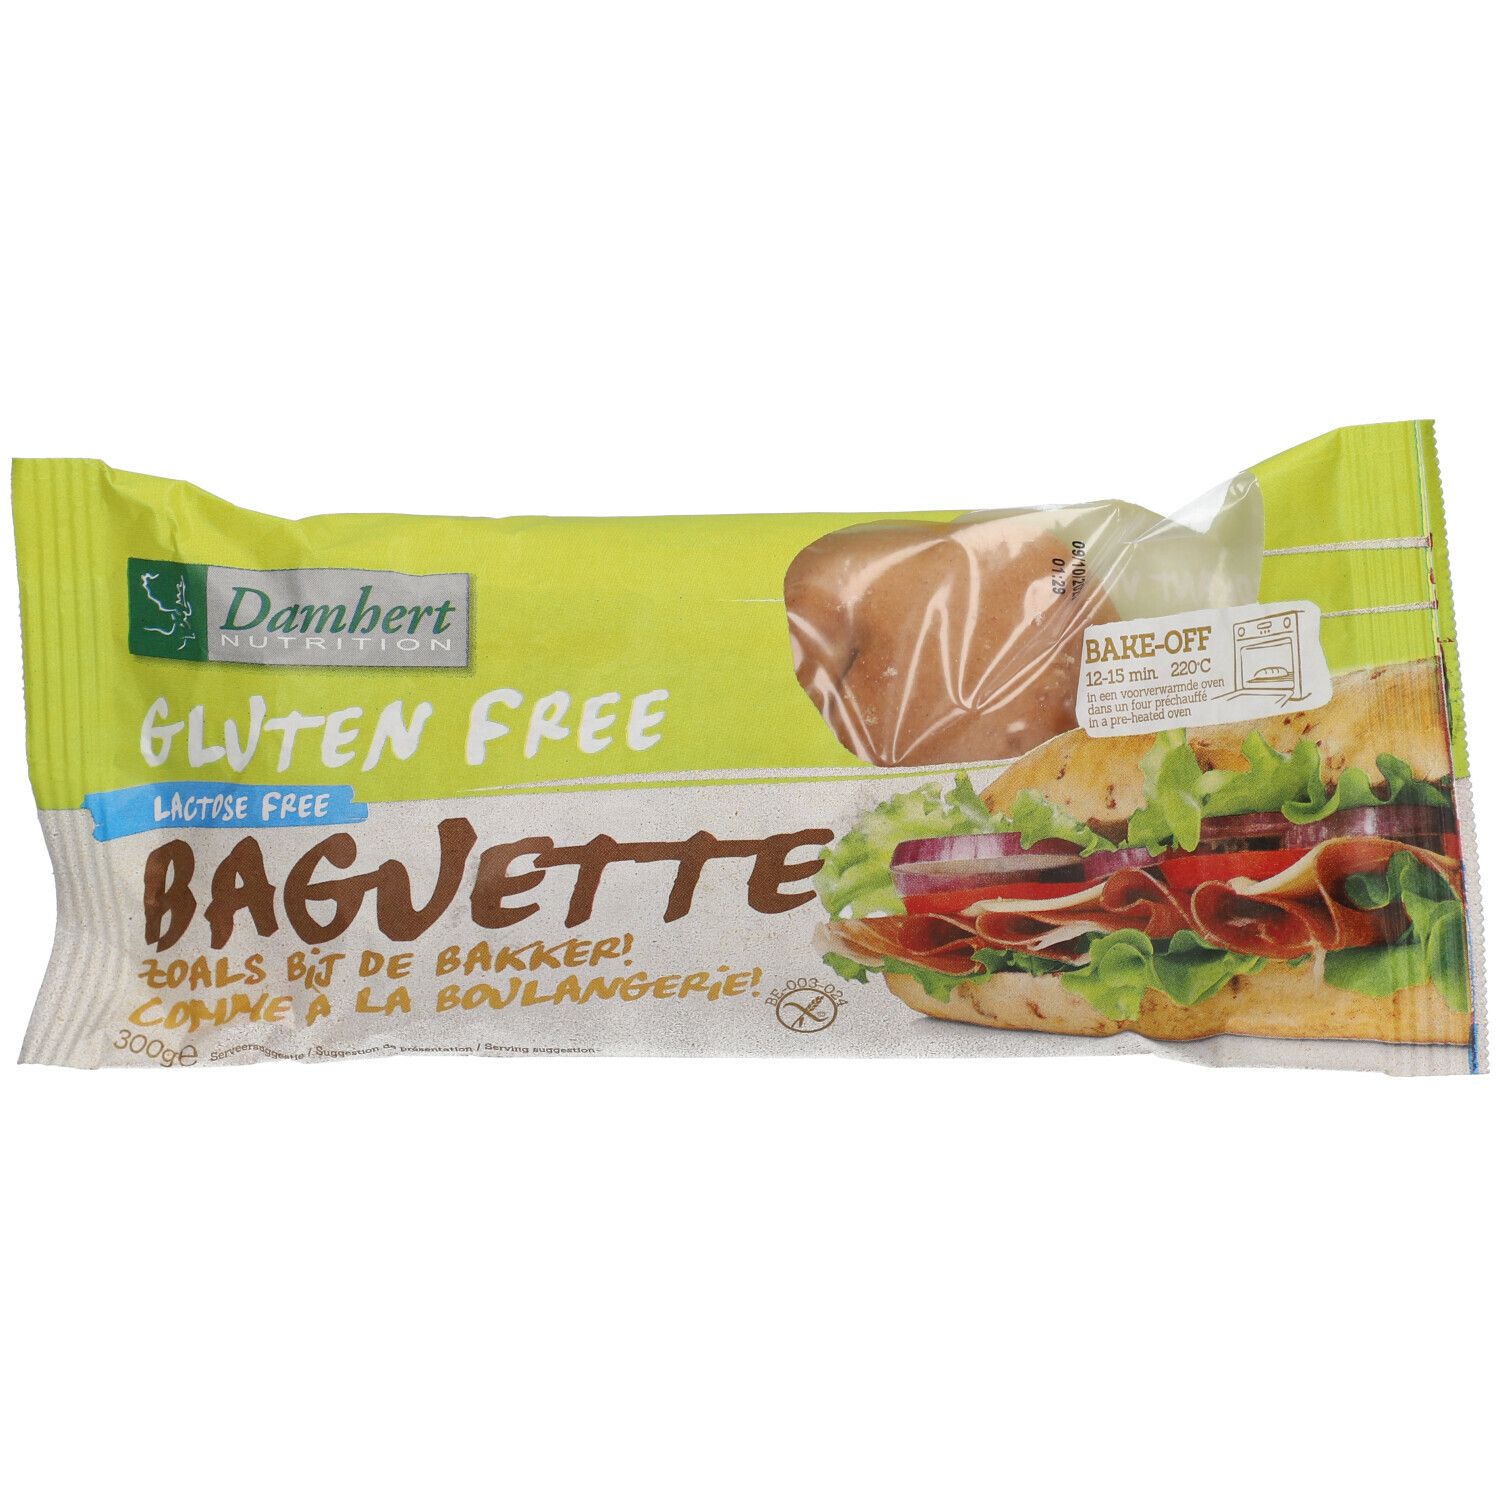 Damhert Gluten Free Baguette sans lactose